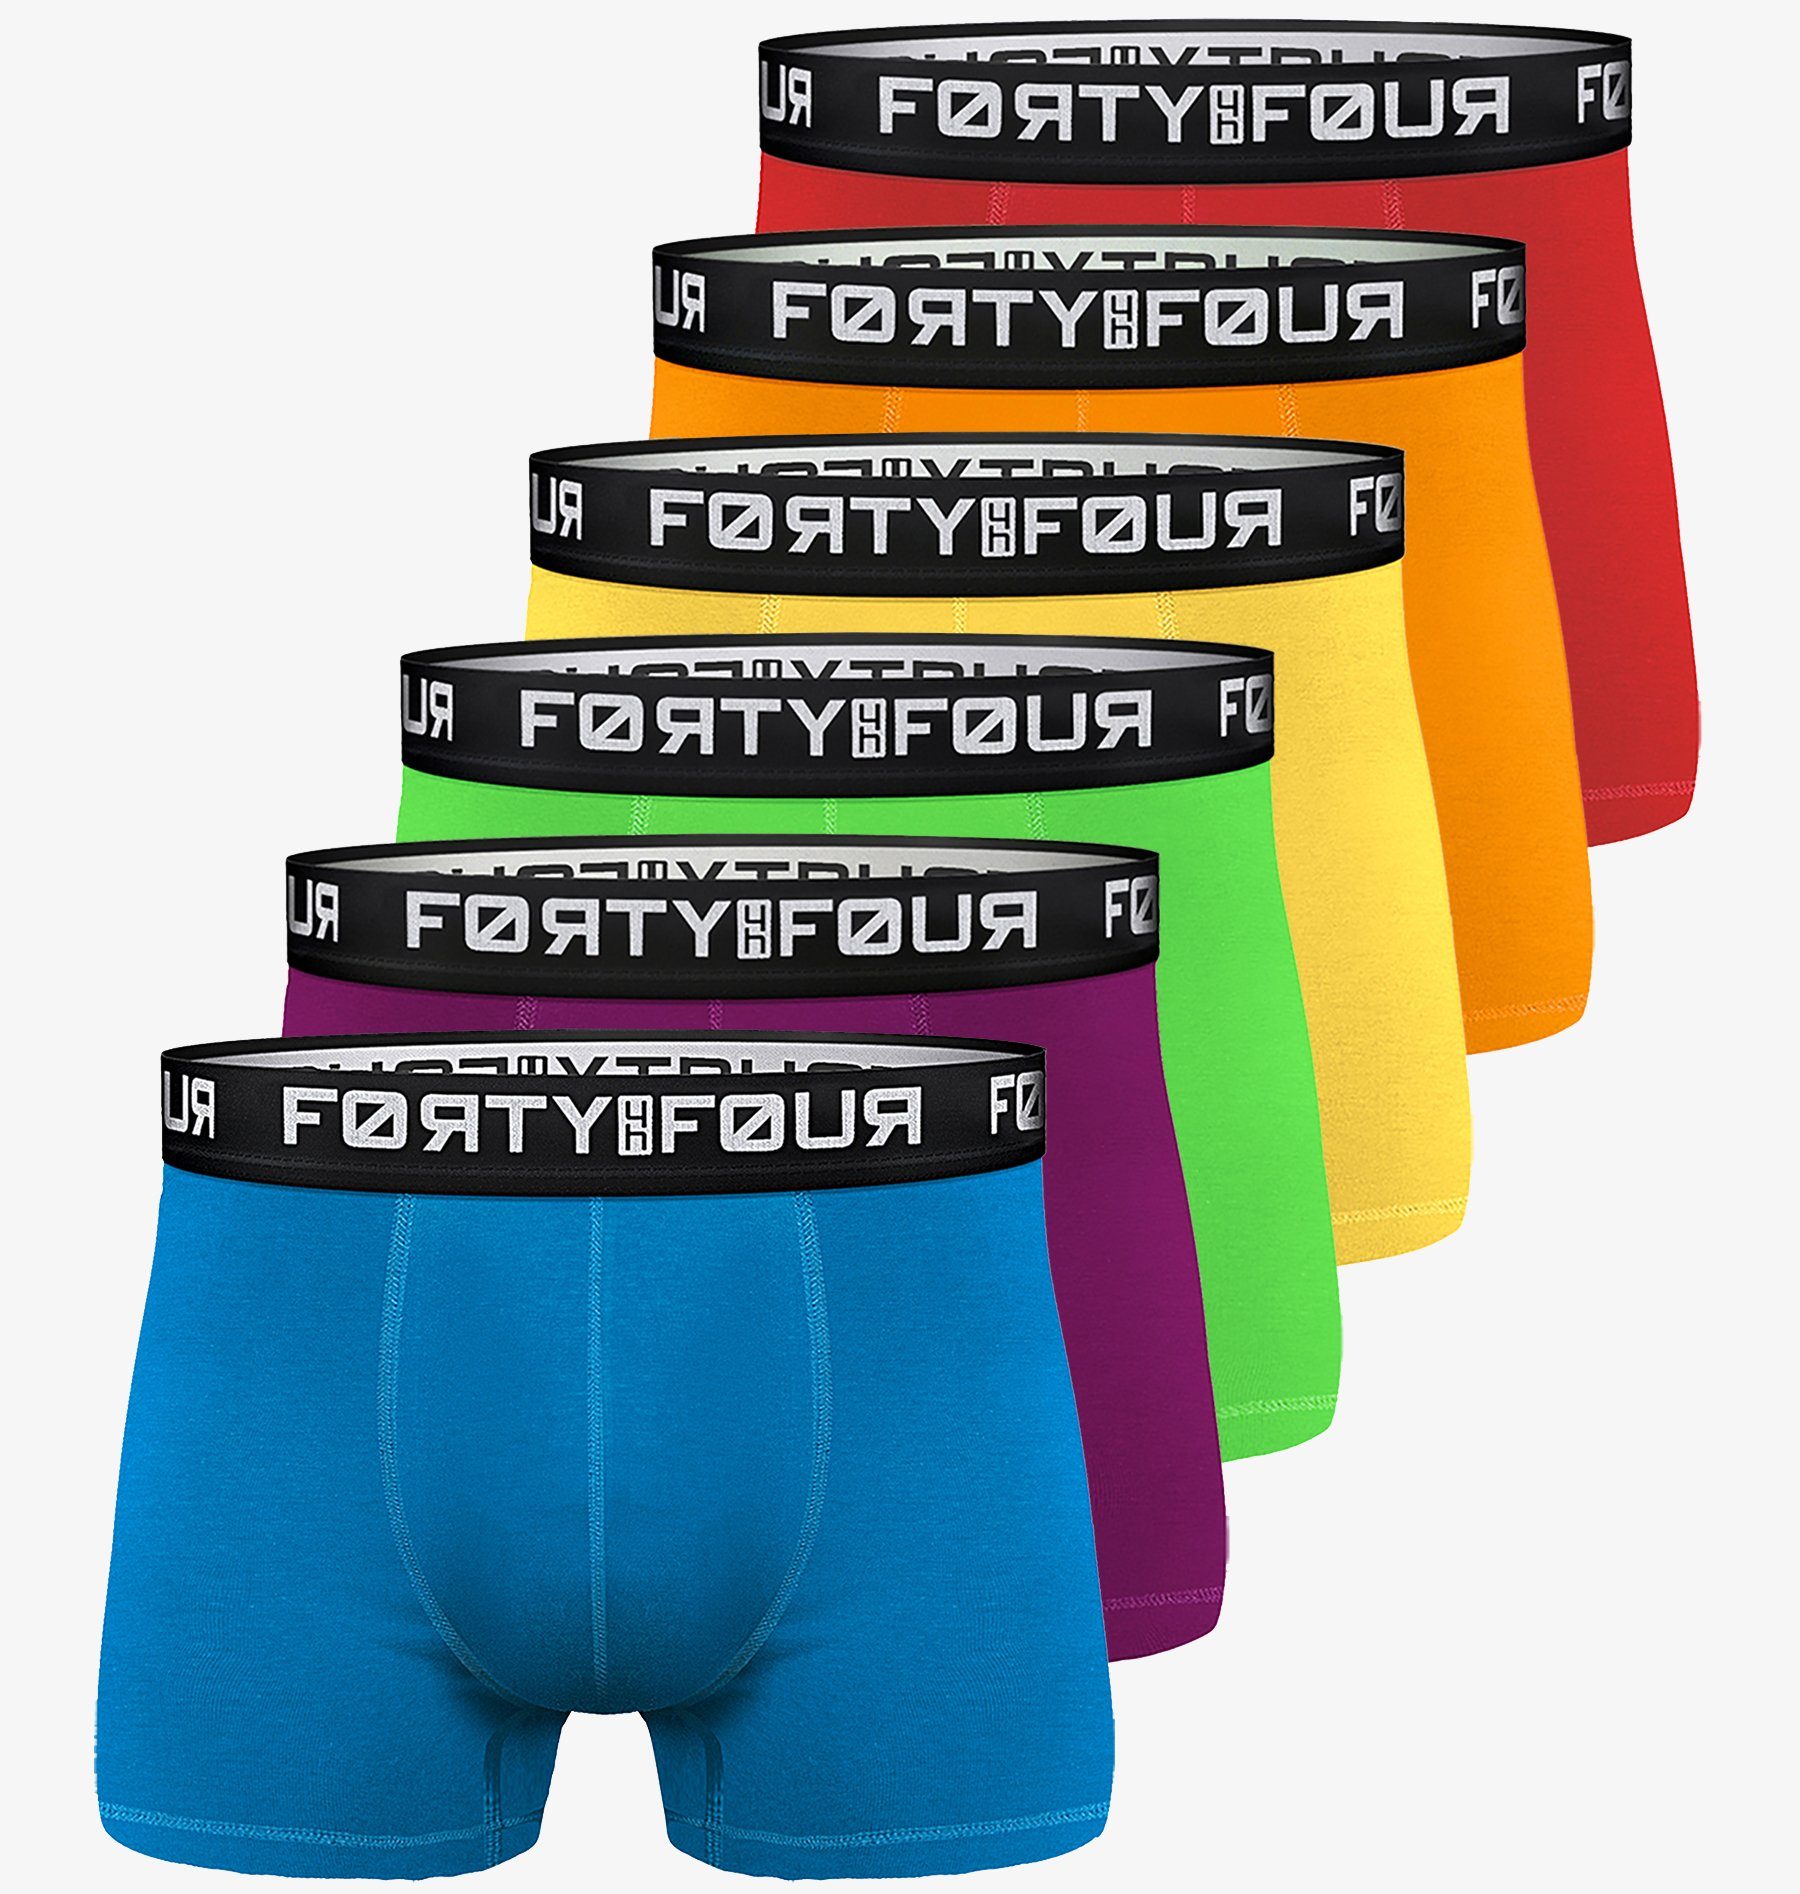 FortyFour Boxershorts Herren Männer Подштанники Baumwolle Premium Qualität perfekte Passform (Vorteilspack, 6er Pack) S - 7XL